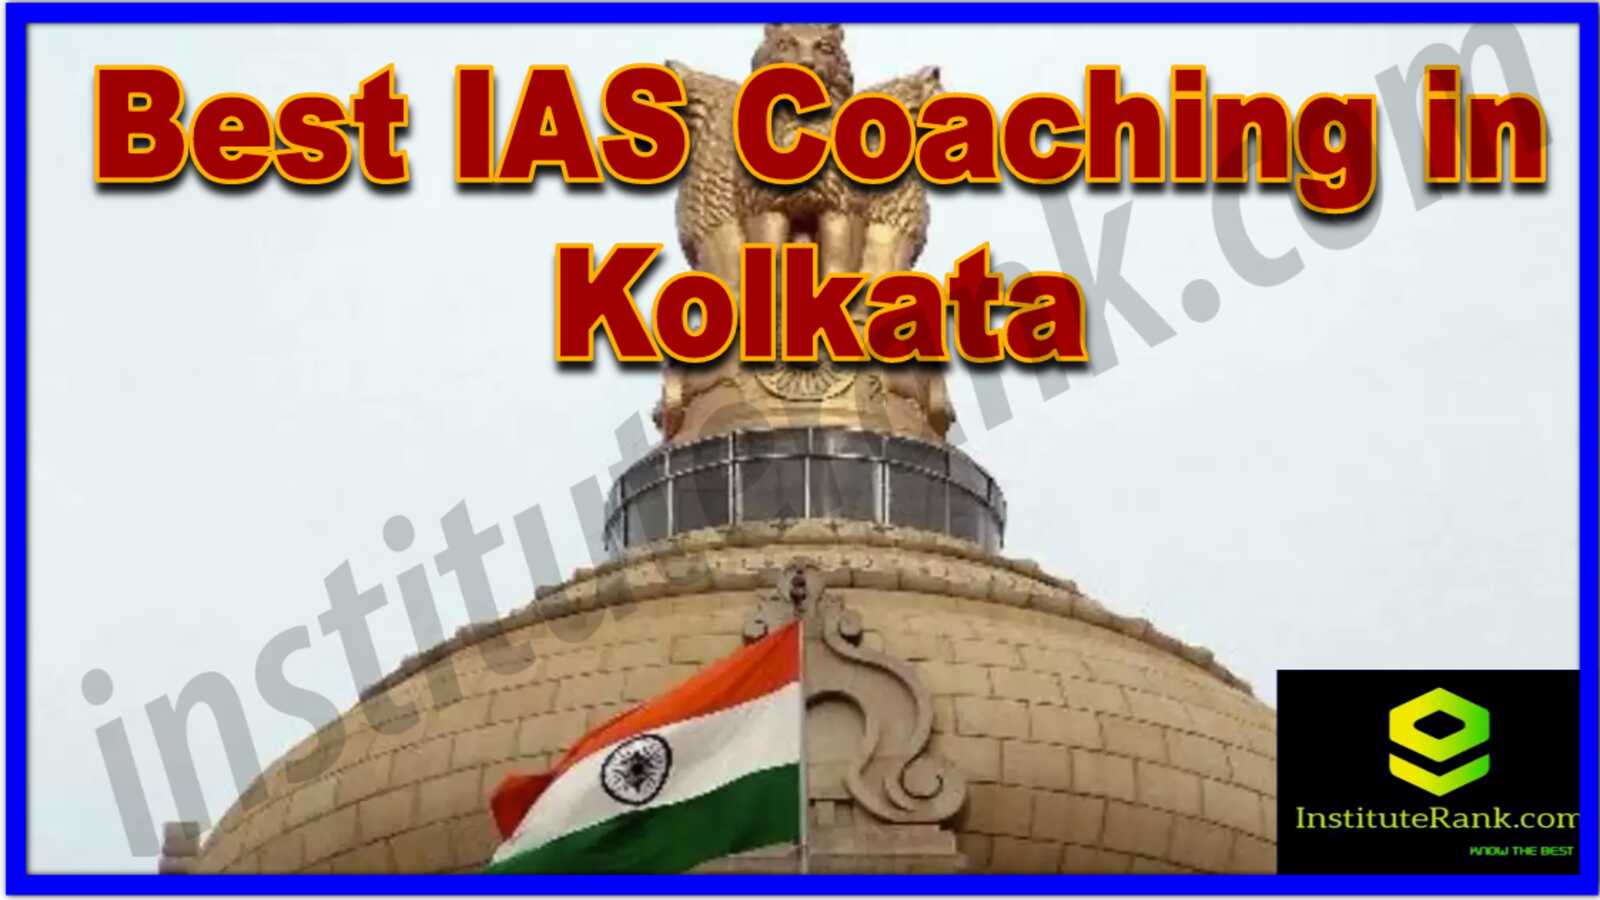 Best IAS Coaching institutes in Kolkata